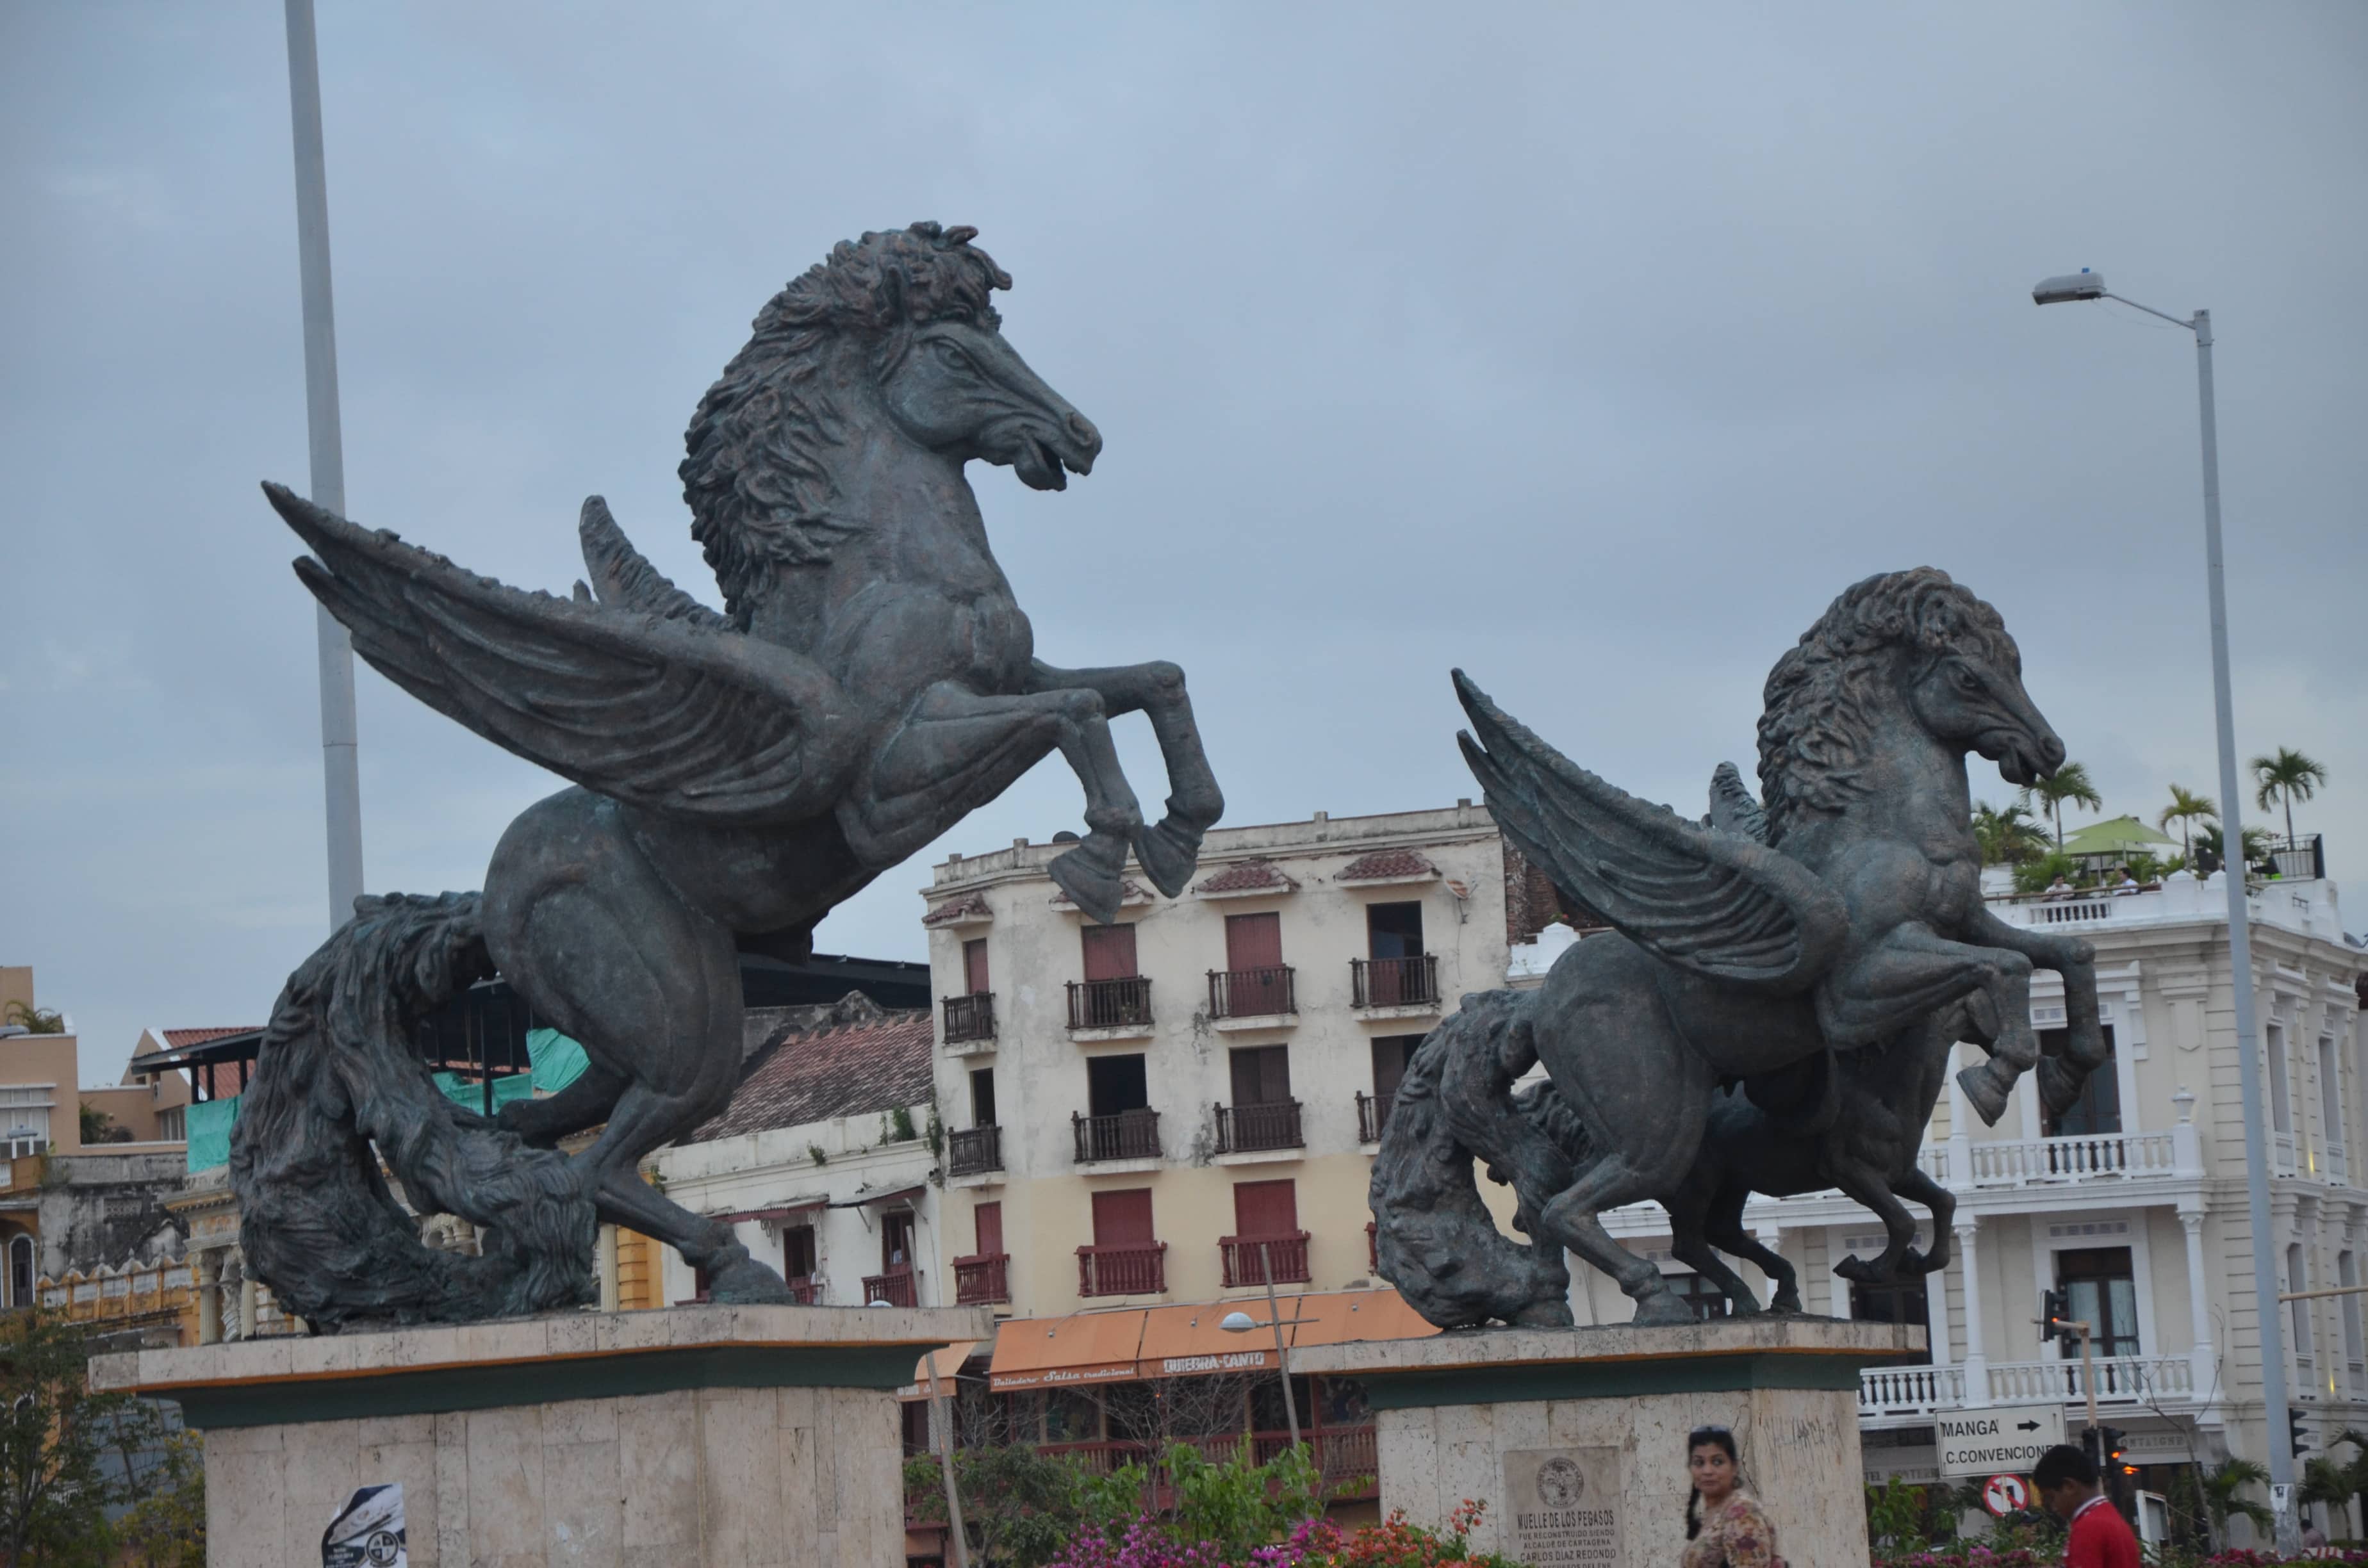 Pegasus statues